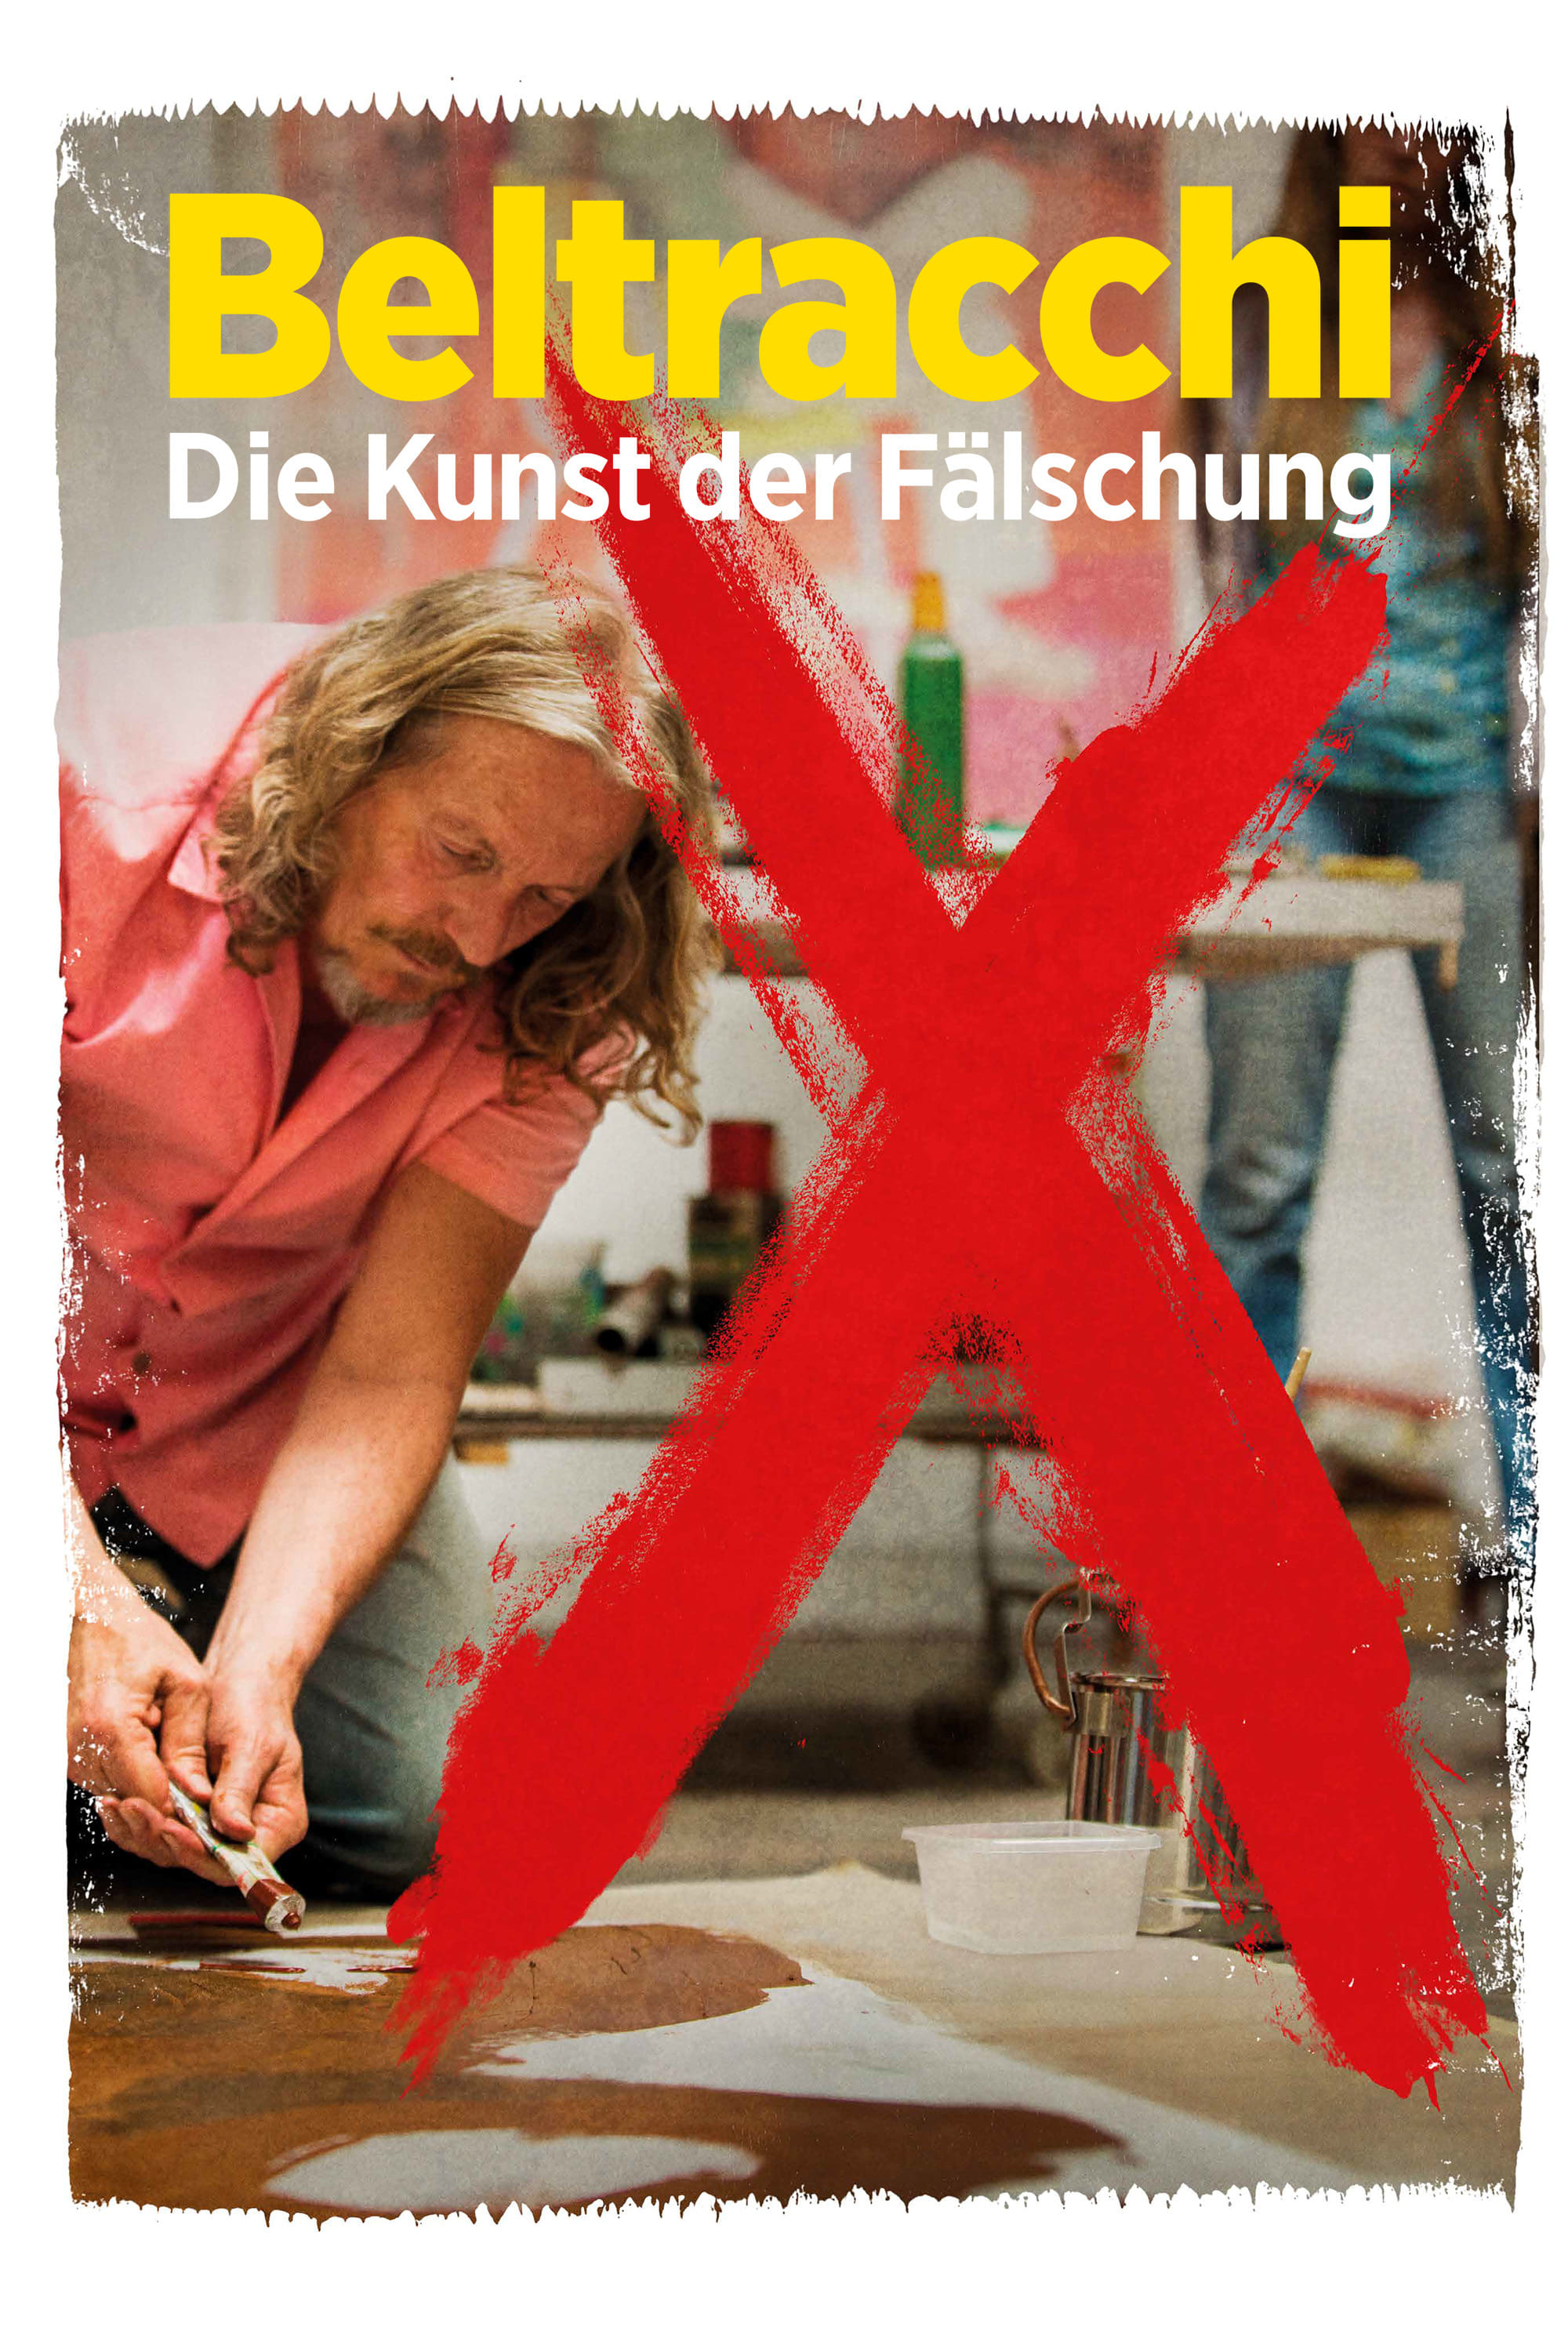 Plakat von "Beltracchi – Die Kunst der Fälschung"